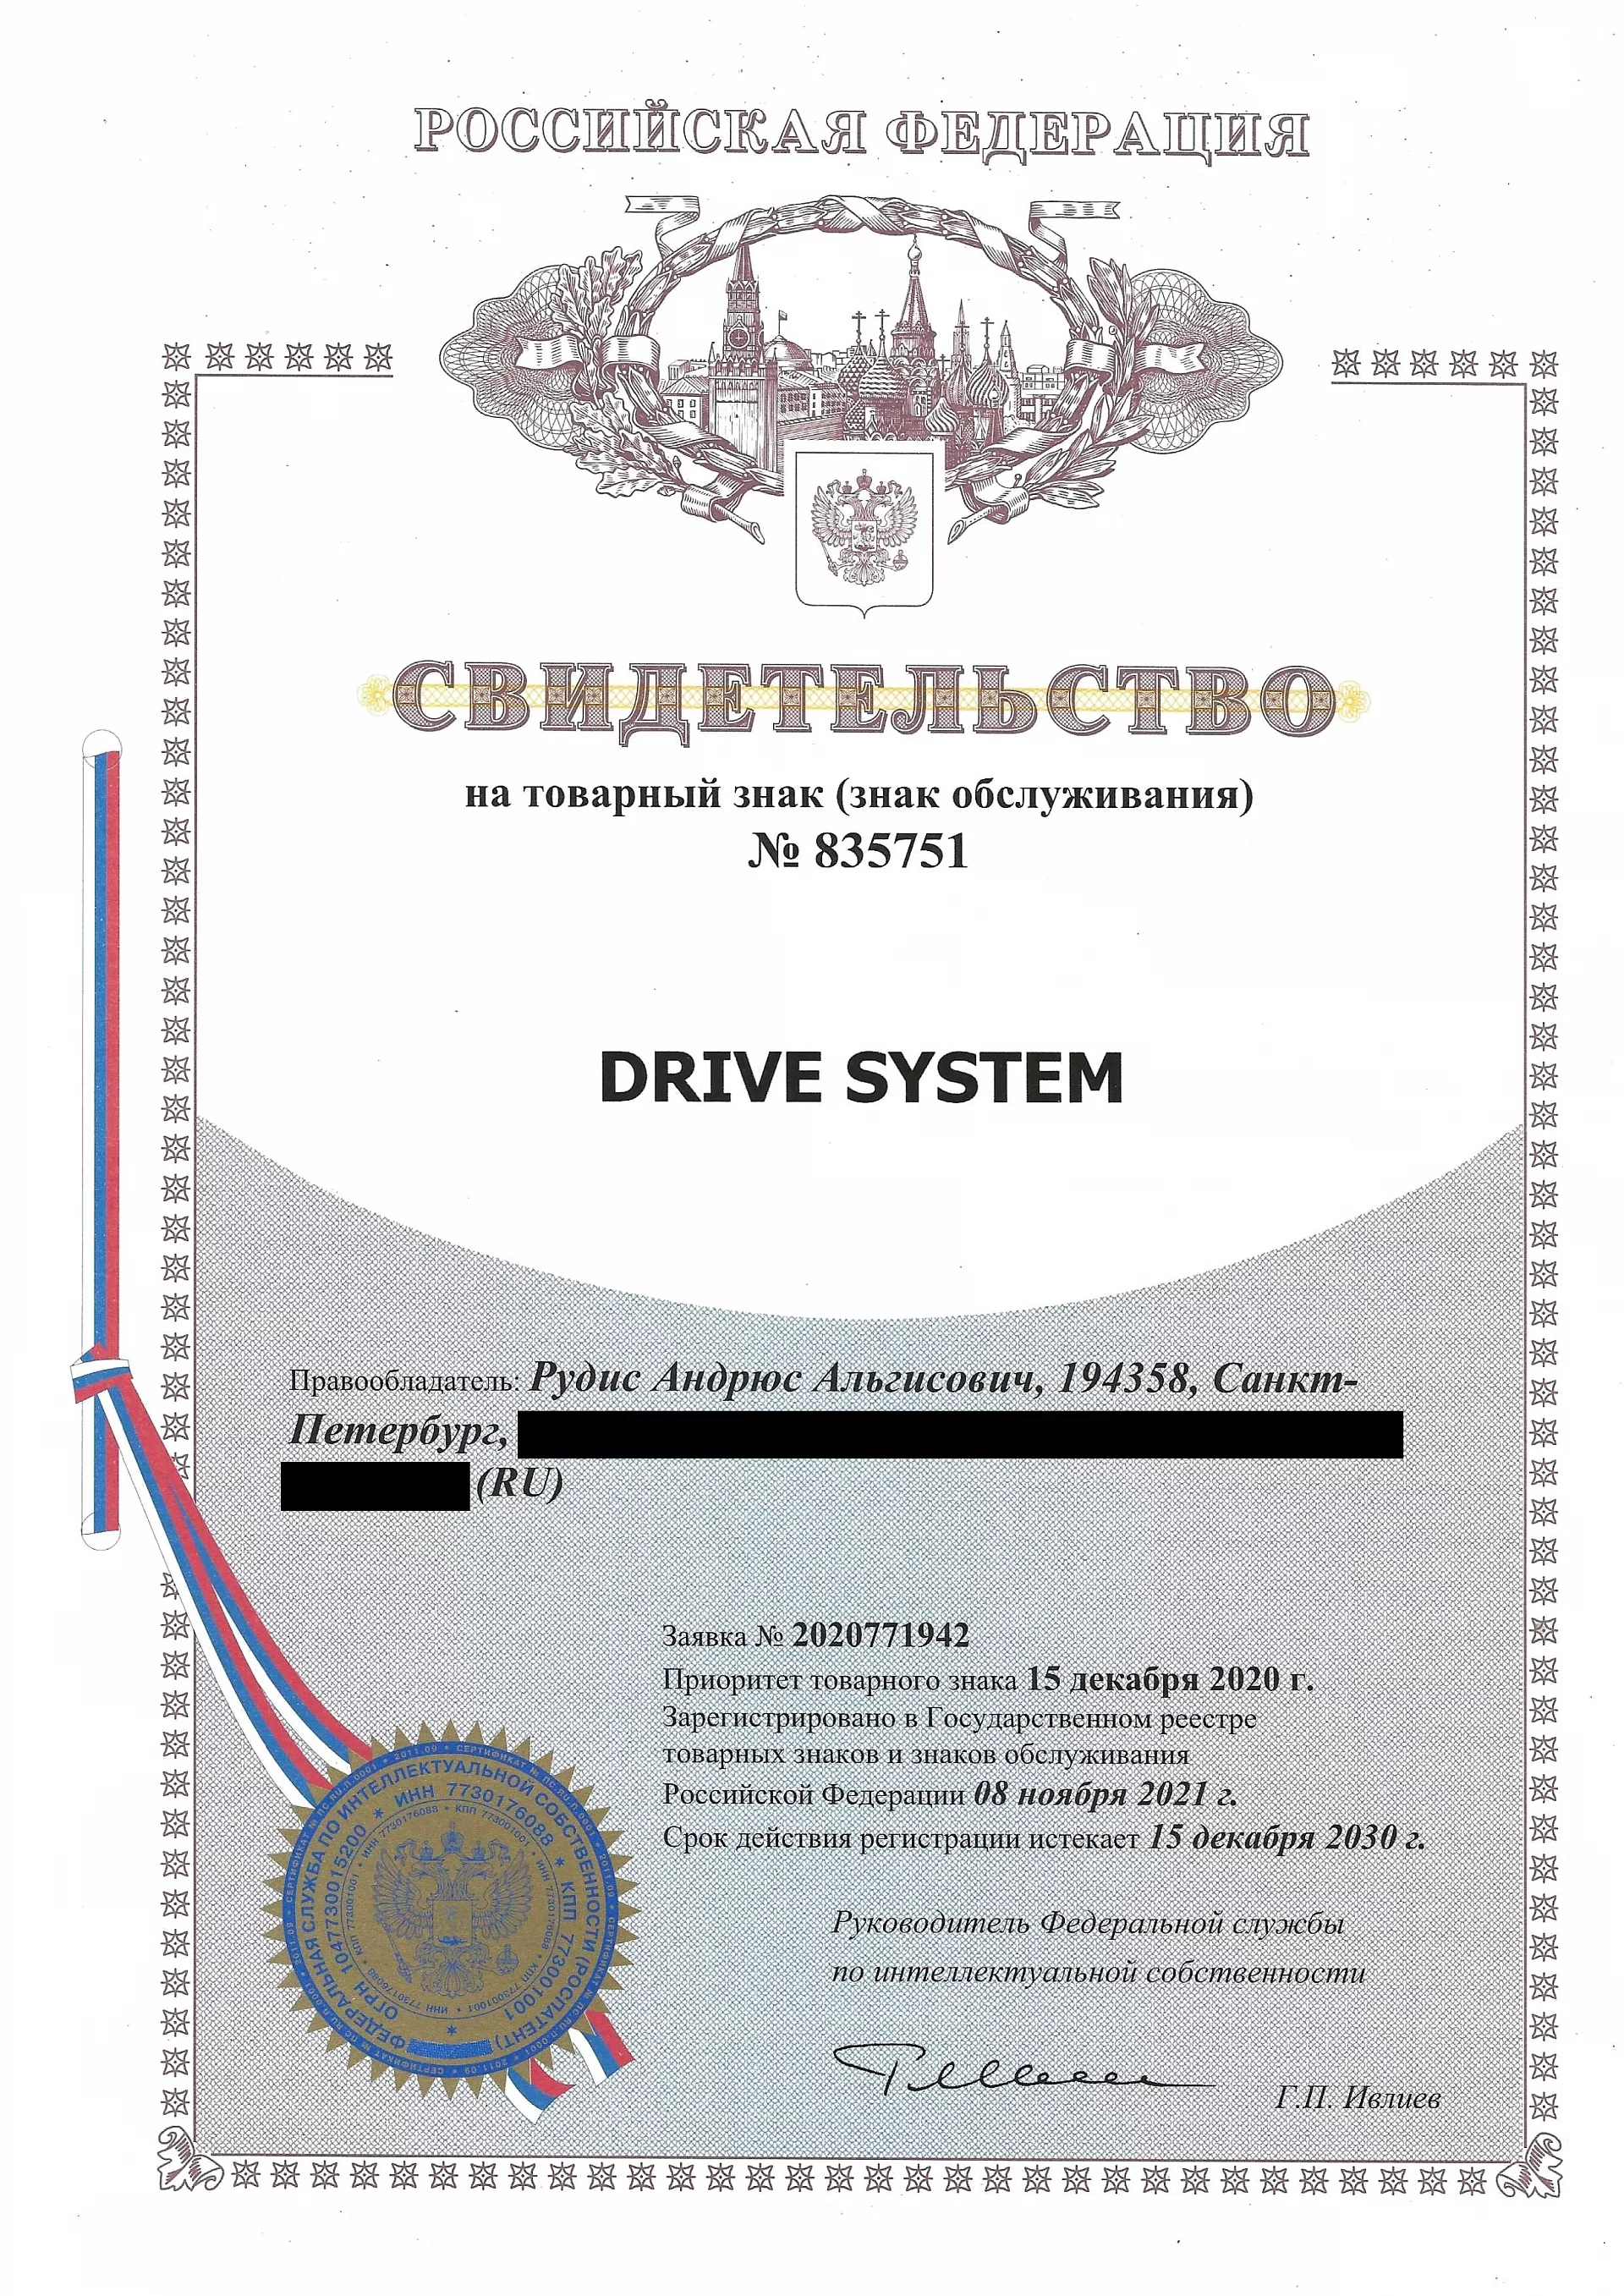 Товарный знак № 835751 – Drive system